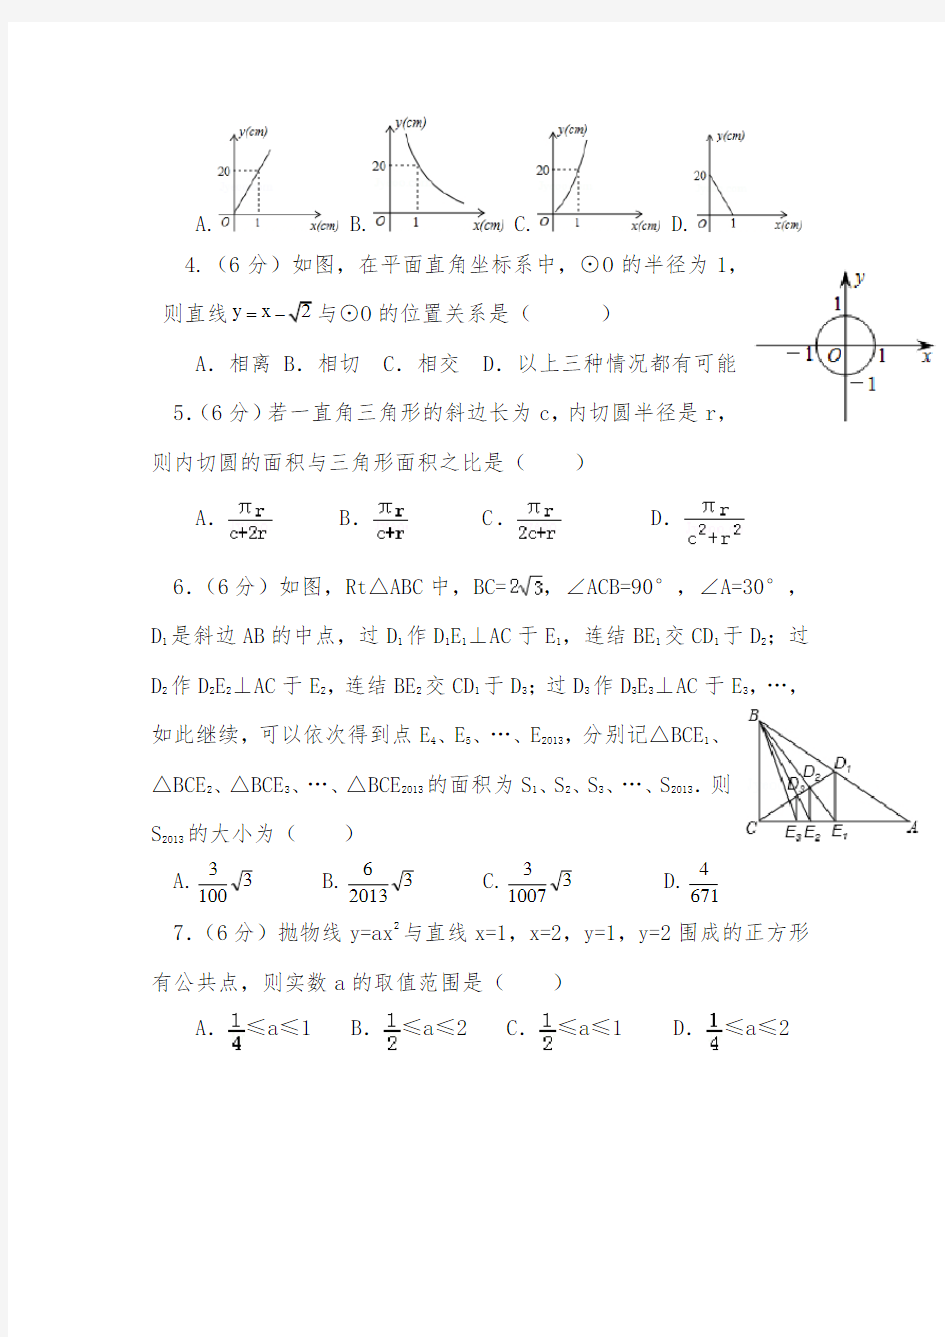 【2020-2021自招】邯郸市第一中学初升高自主招生数学模拟试卷【4套】【含解析】